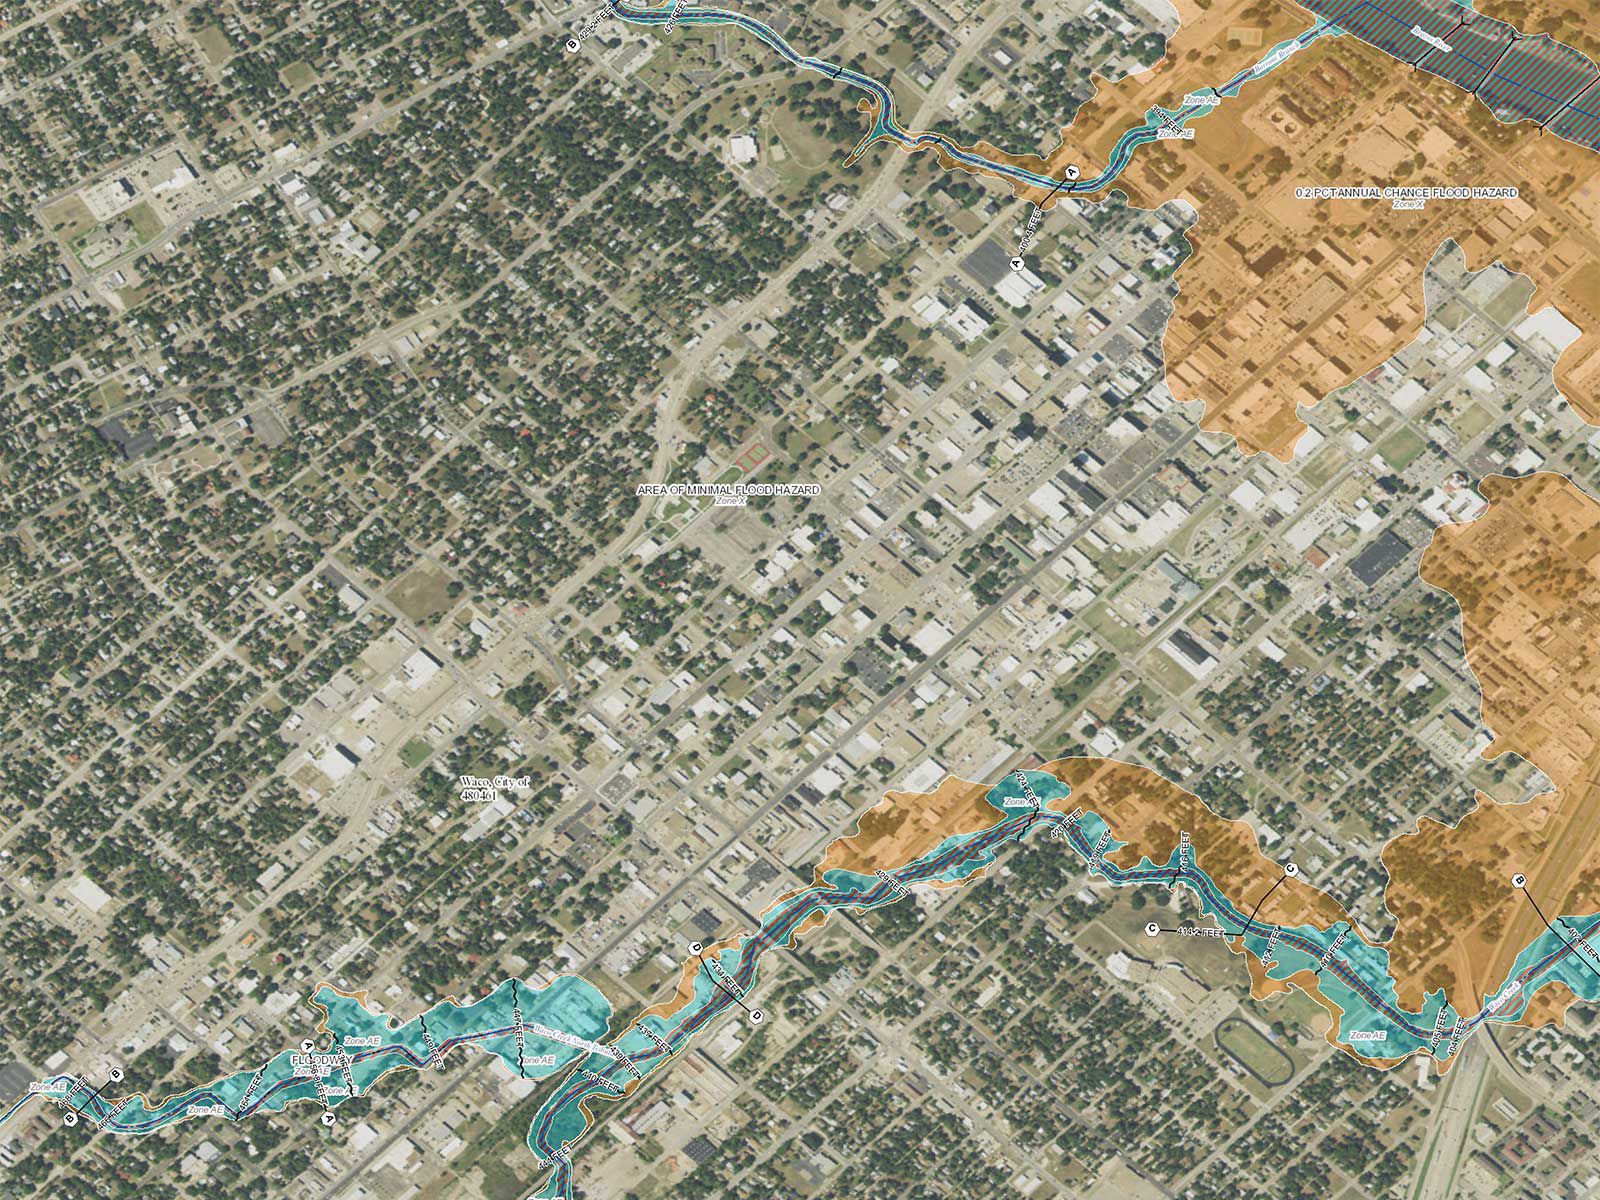 new fema flood zone maps